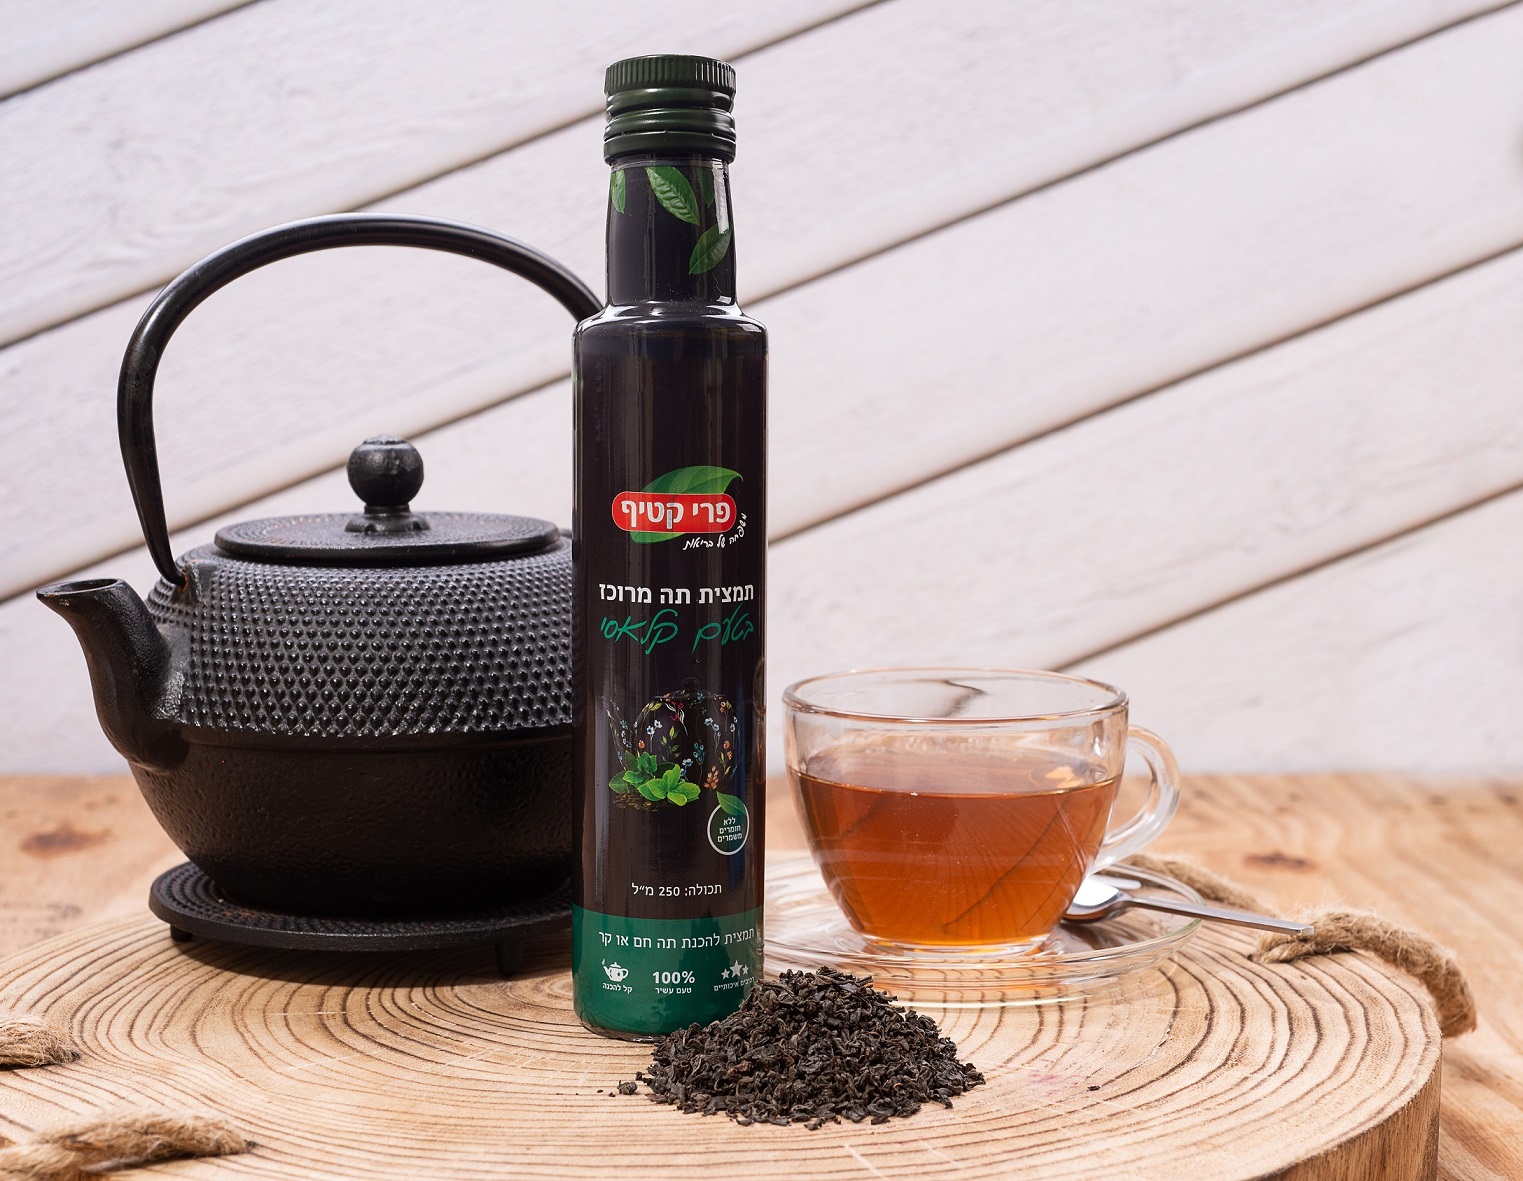 טבעי זה הכי… חברת המשקאות פרי קטיף משיקה: תמצית תה מרוכז קלאסי ובשלל טעמים ללא תוספת סוכר.